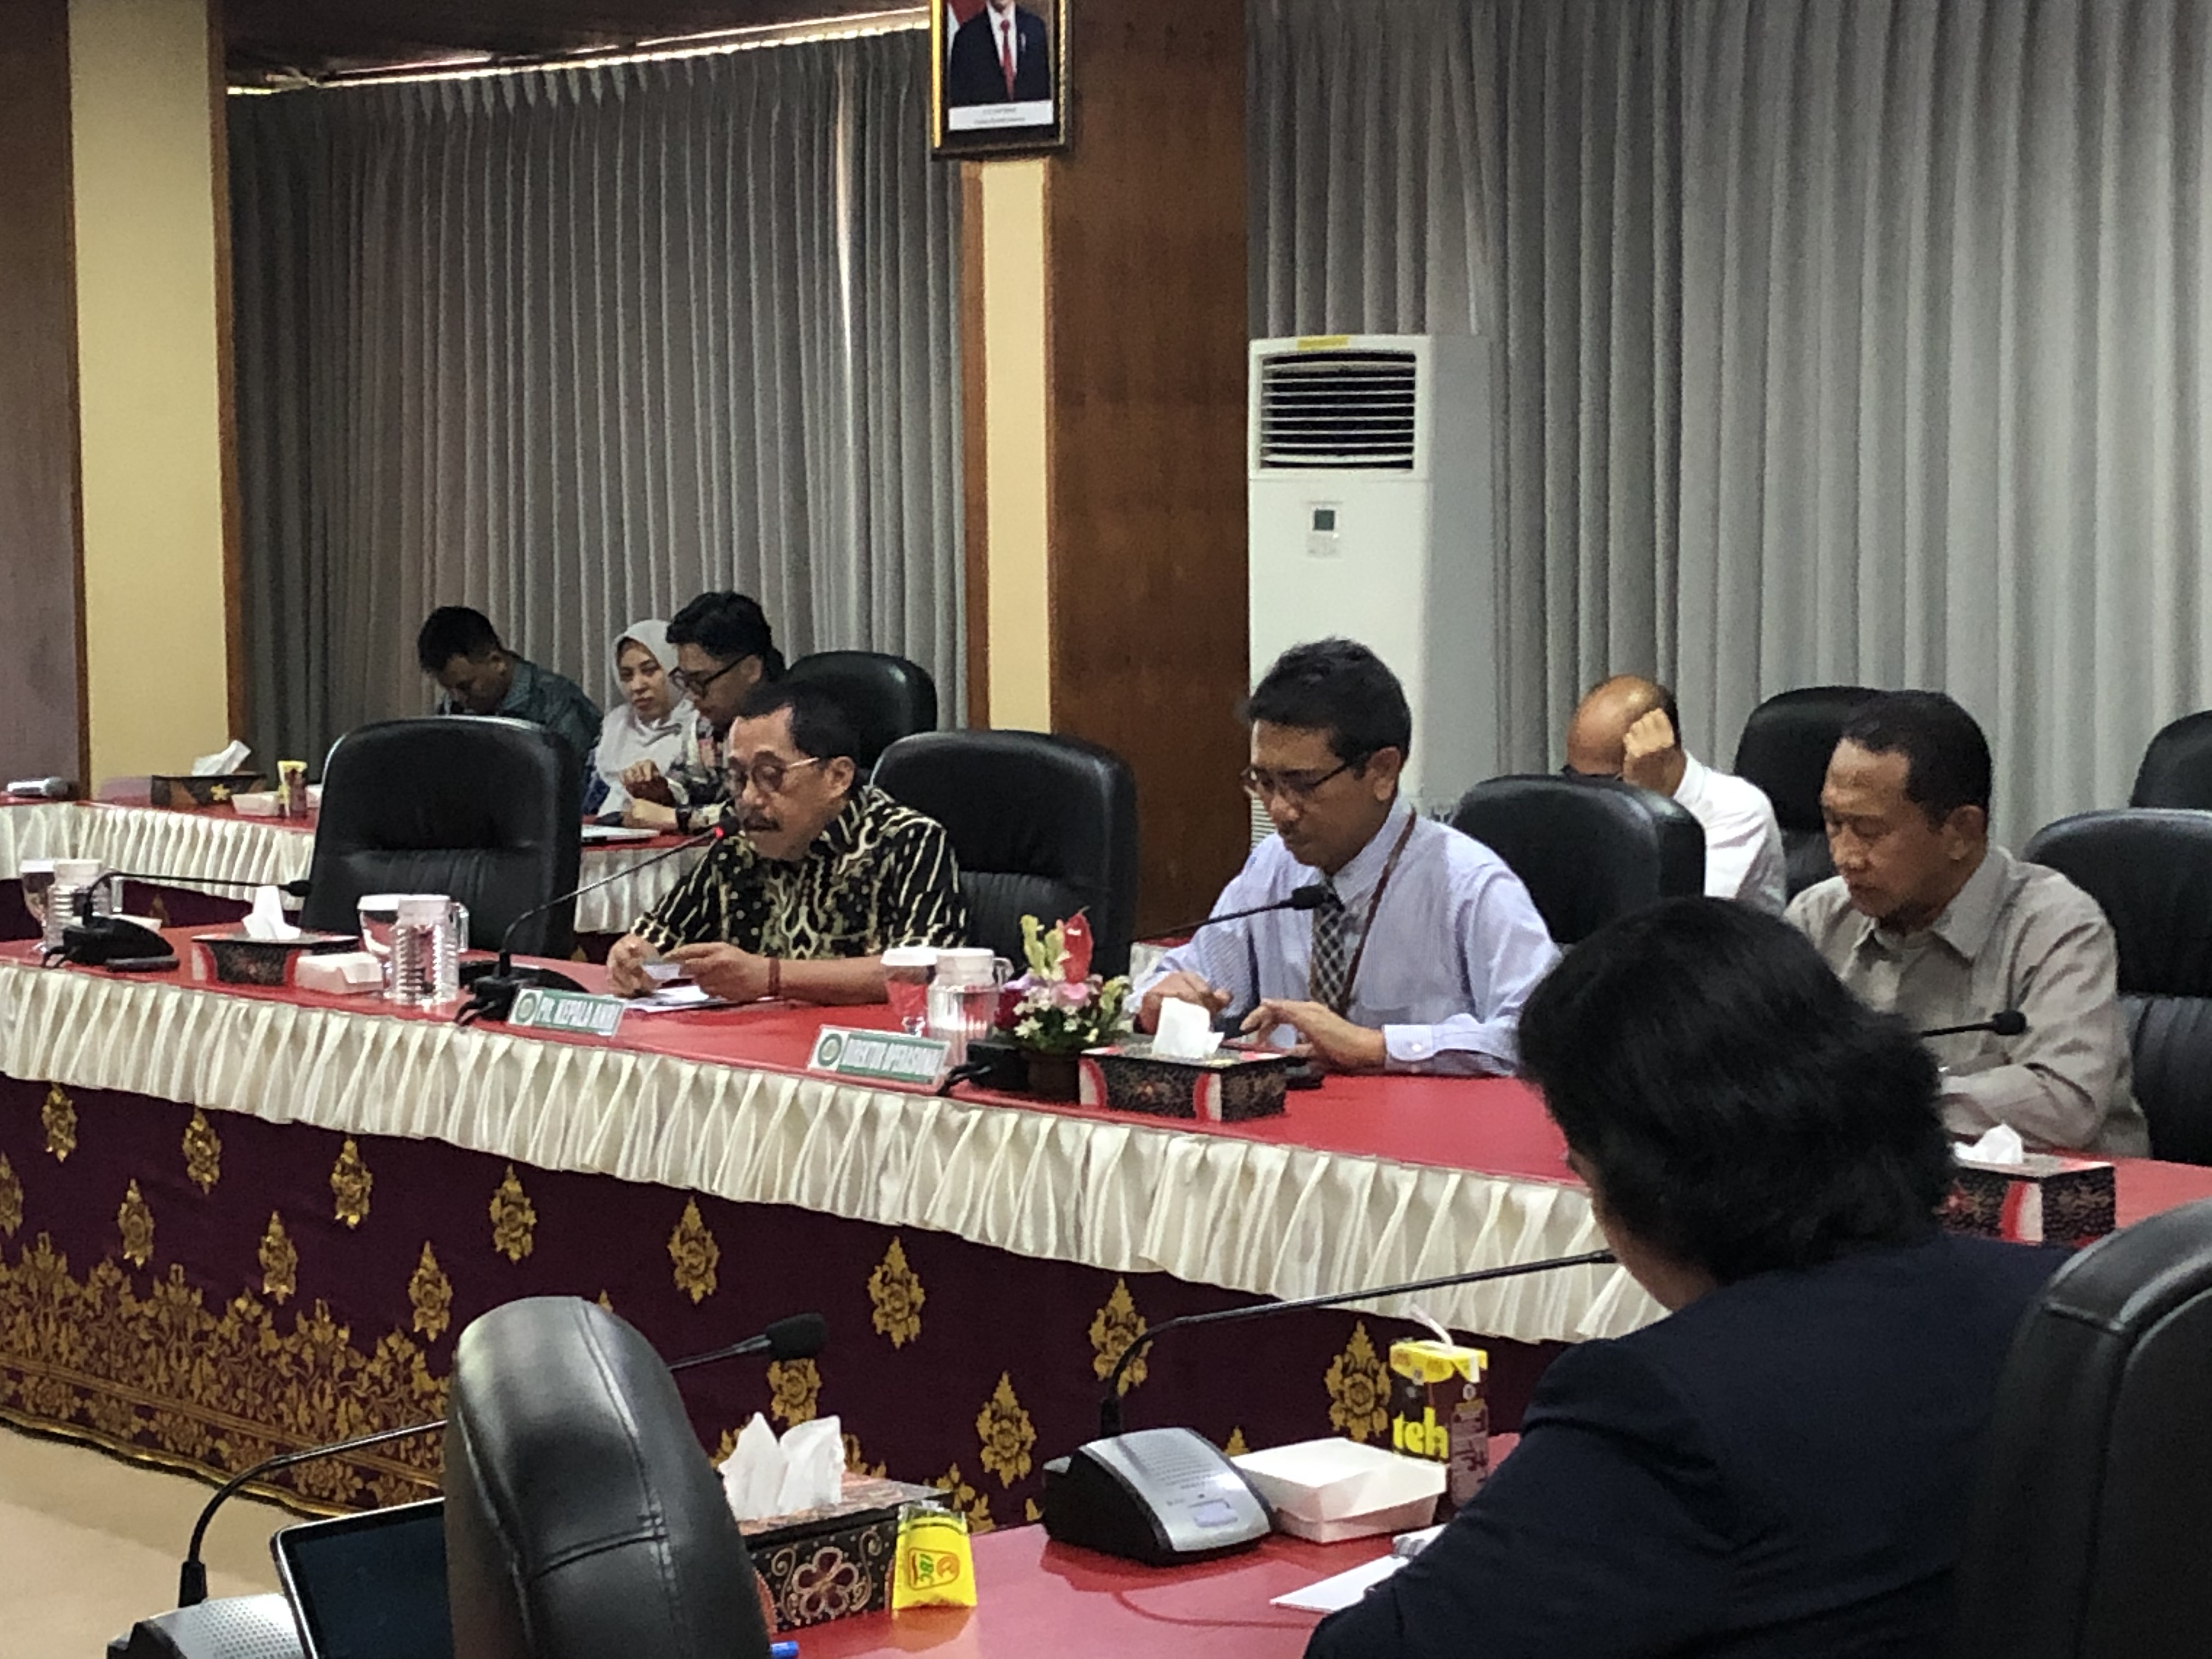 Dorong Peningkatan Kualitas Manajemen BPD Bali, Plt. Kepala ANRI Bagikan Informasi Kearsipan